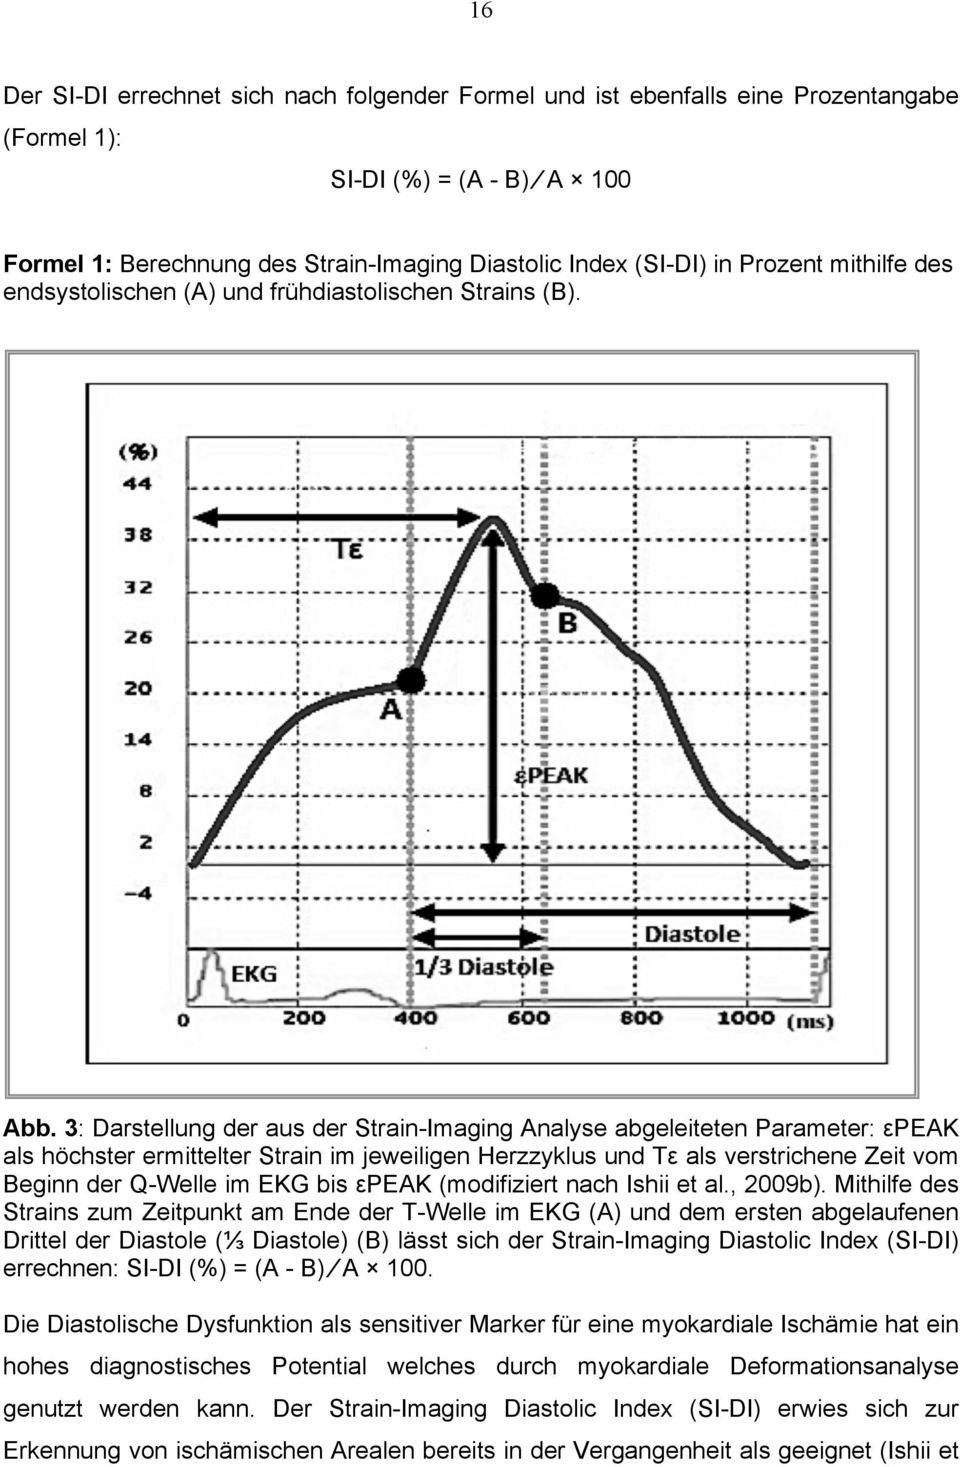 3: Darstellung der aus der Strain-Imaging Analyse abgeleiteten Parameter: εpeak als höchster ermittelter Strain im jeweiligen Herzzyklus und Tε als verstrichene Zeit vom Beginn der Q-Welle im EKG bis